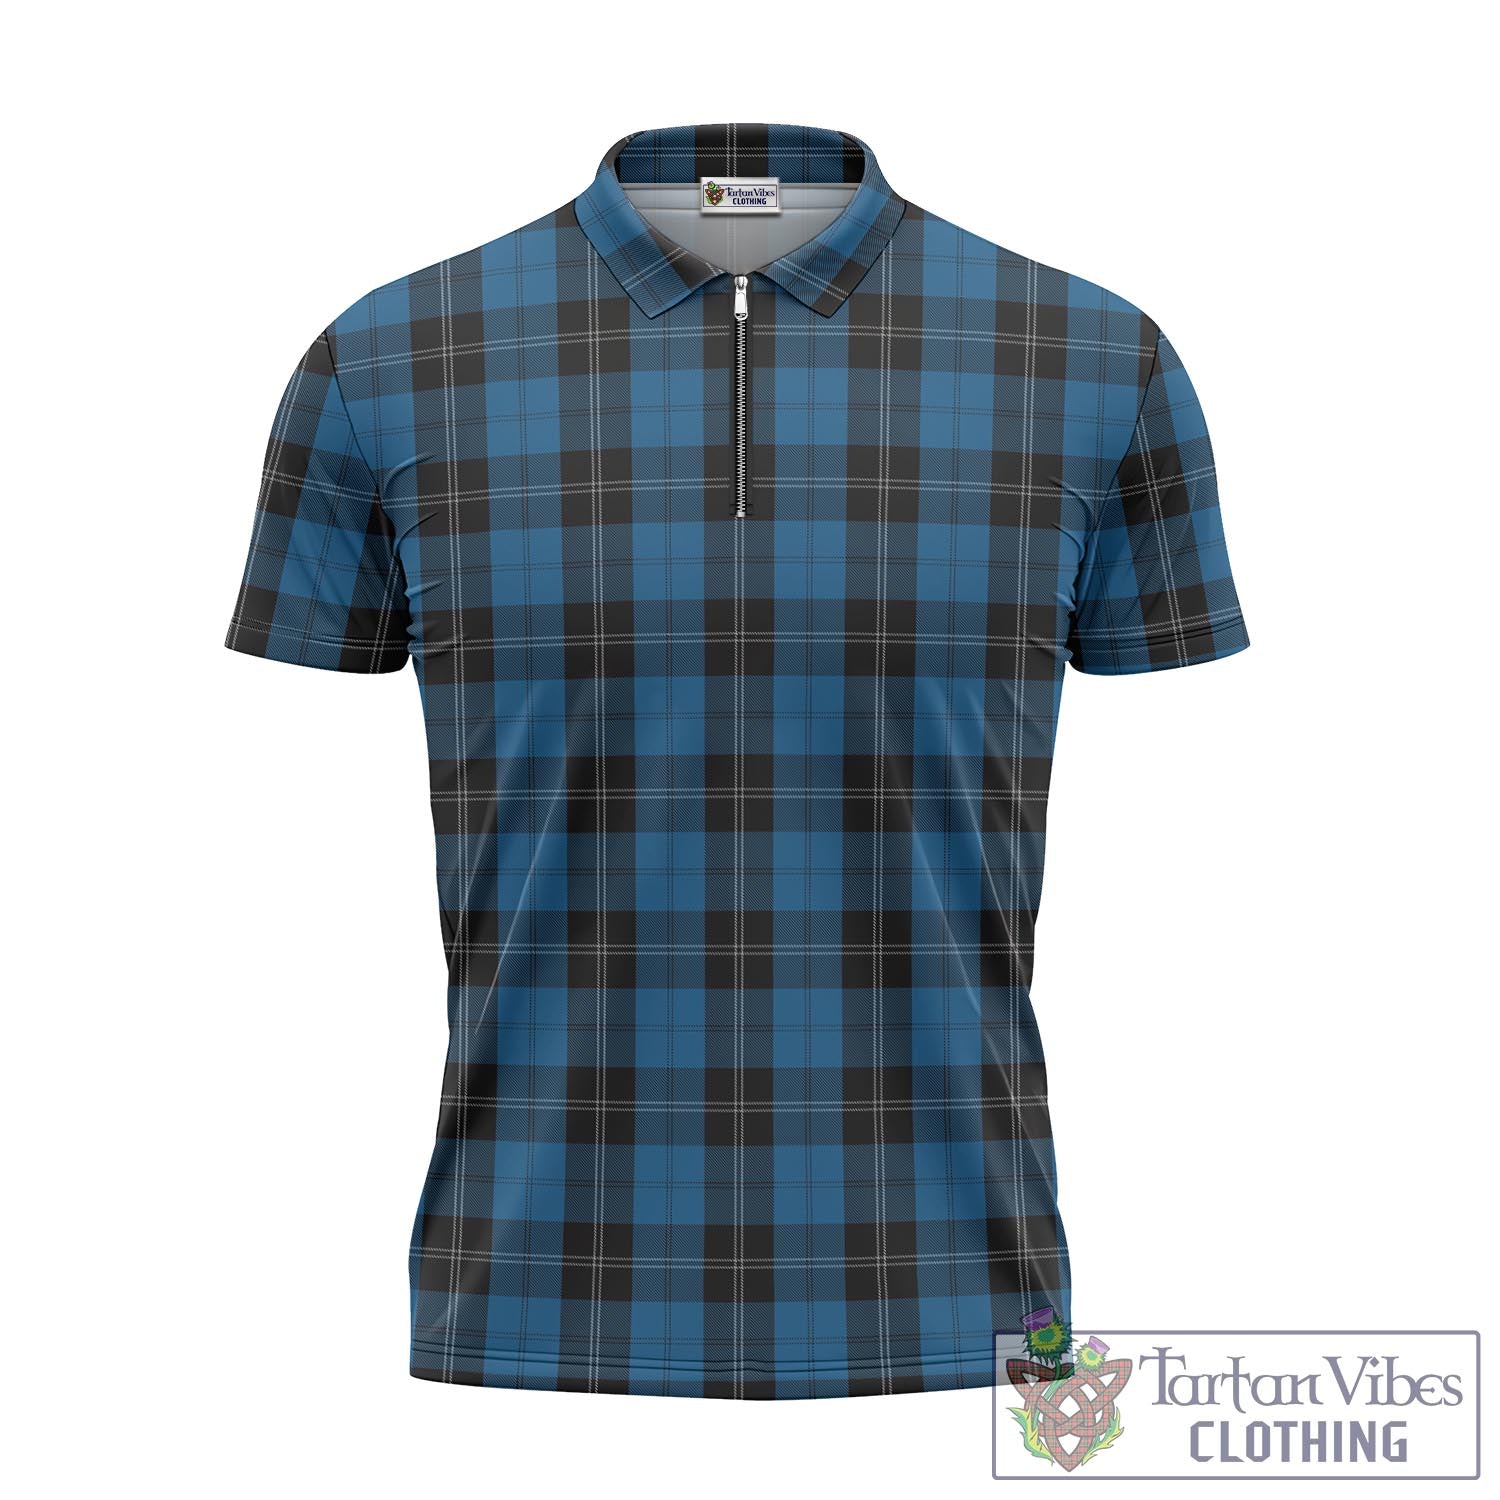 Tartan Vibes Clothing Ramsay Blue Hunting Tartan Zipper Polo Shirt